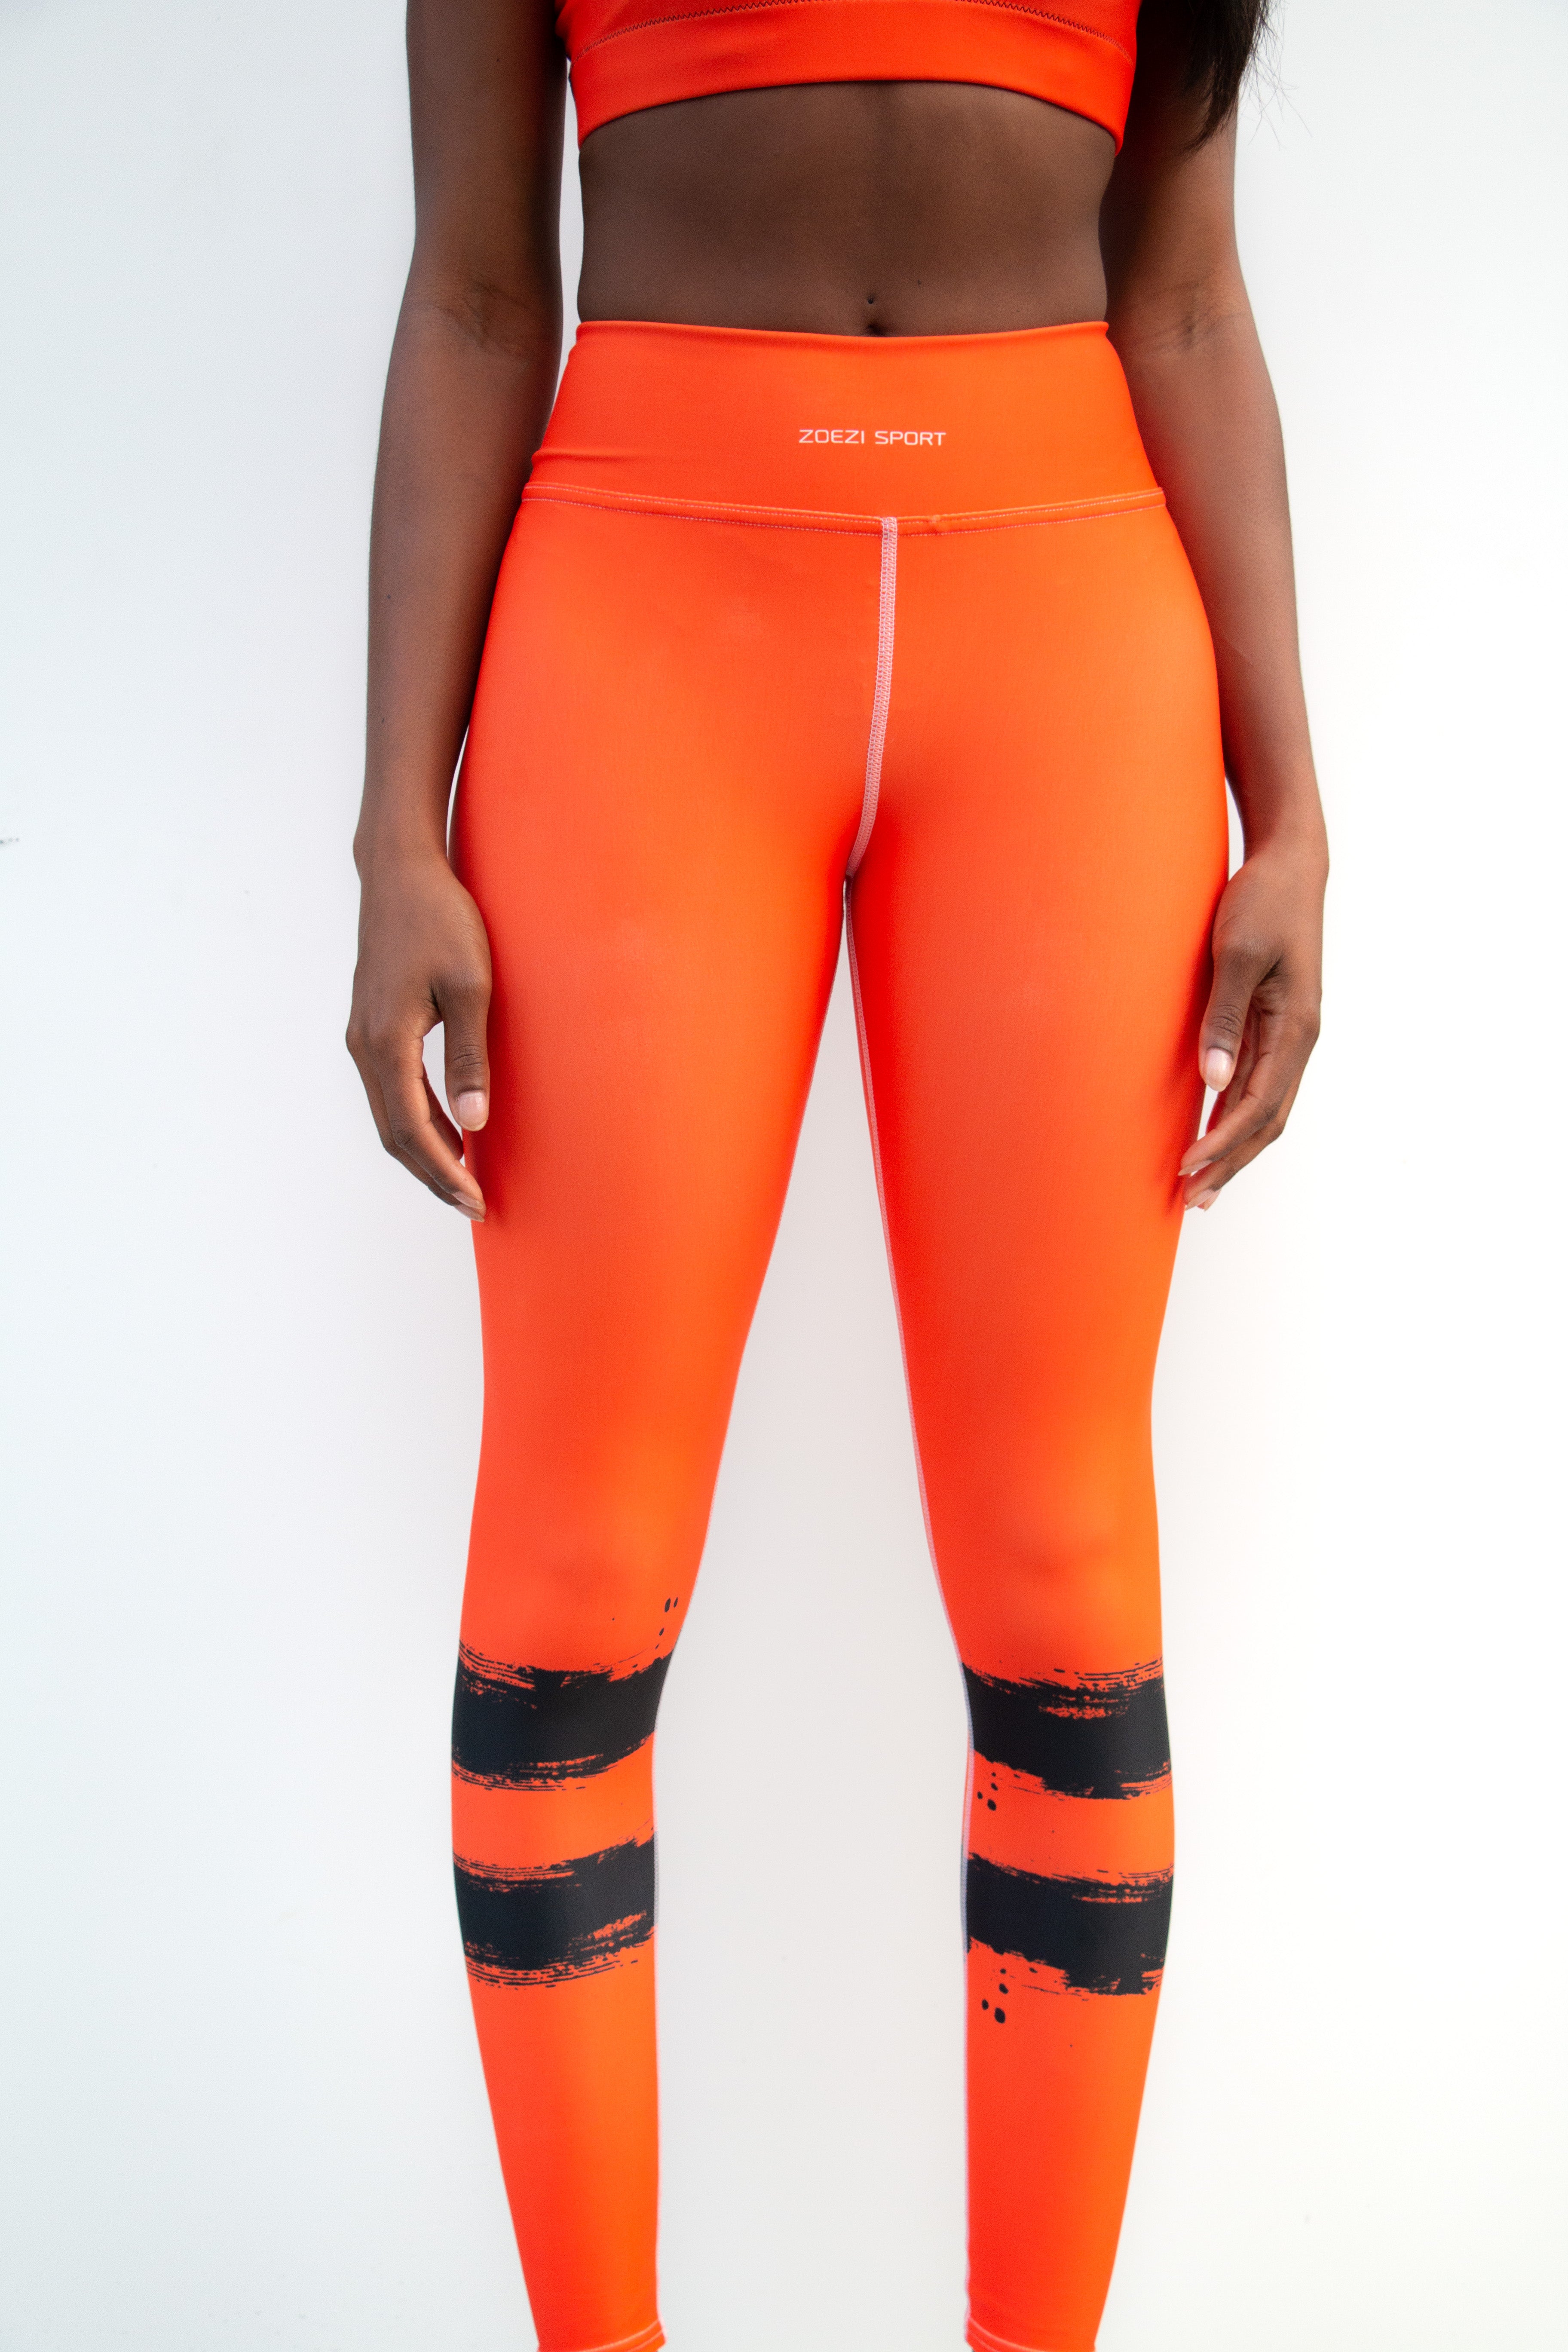 Tangerine Orange Capris  Orange leggings, Buttery soft leggings, Soft  leggings